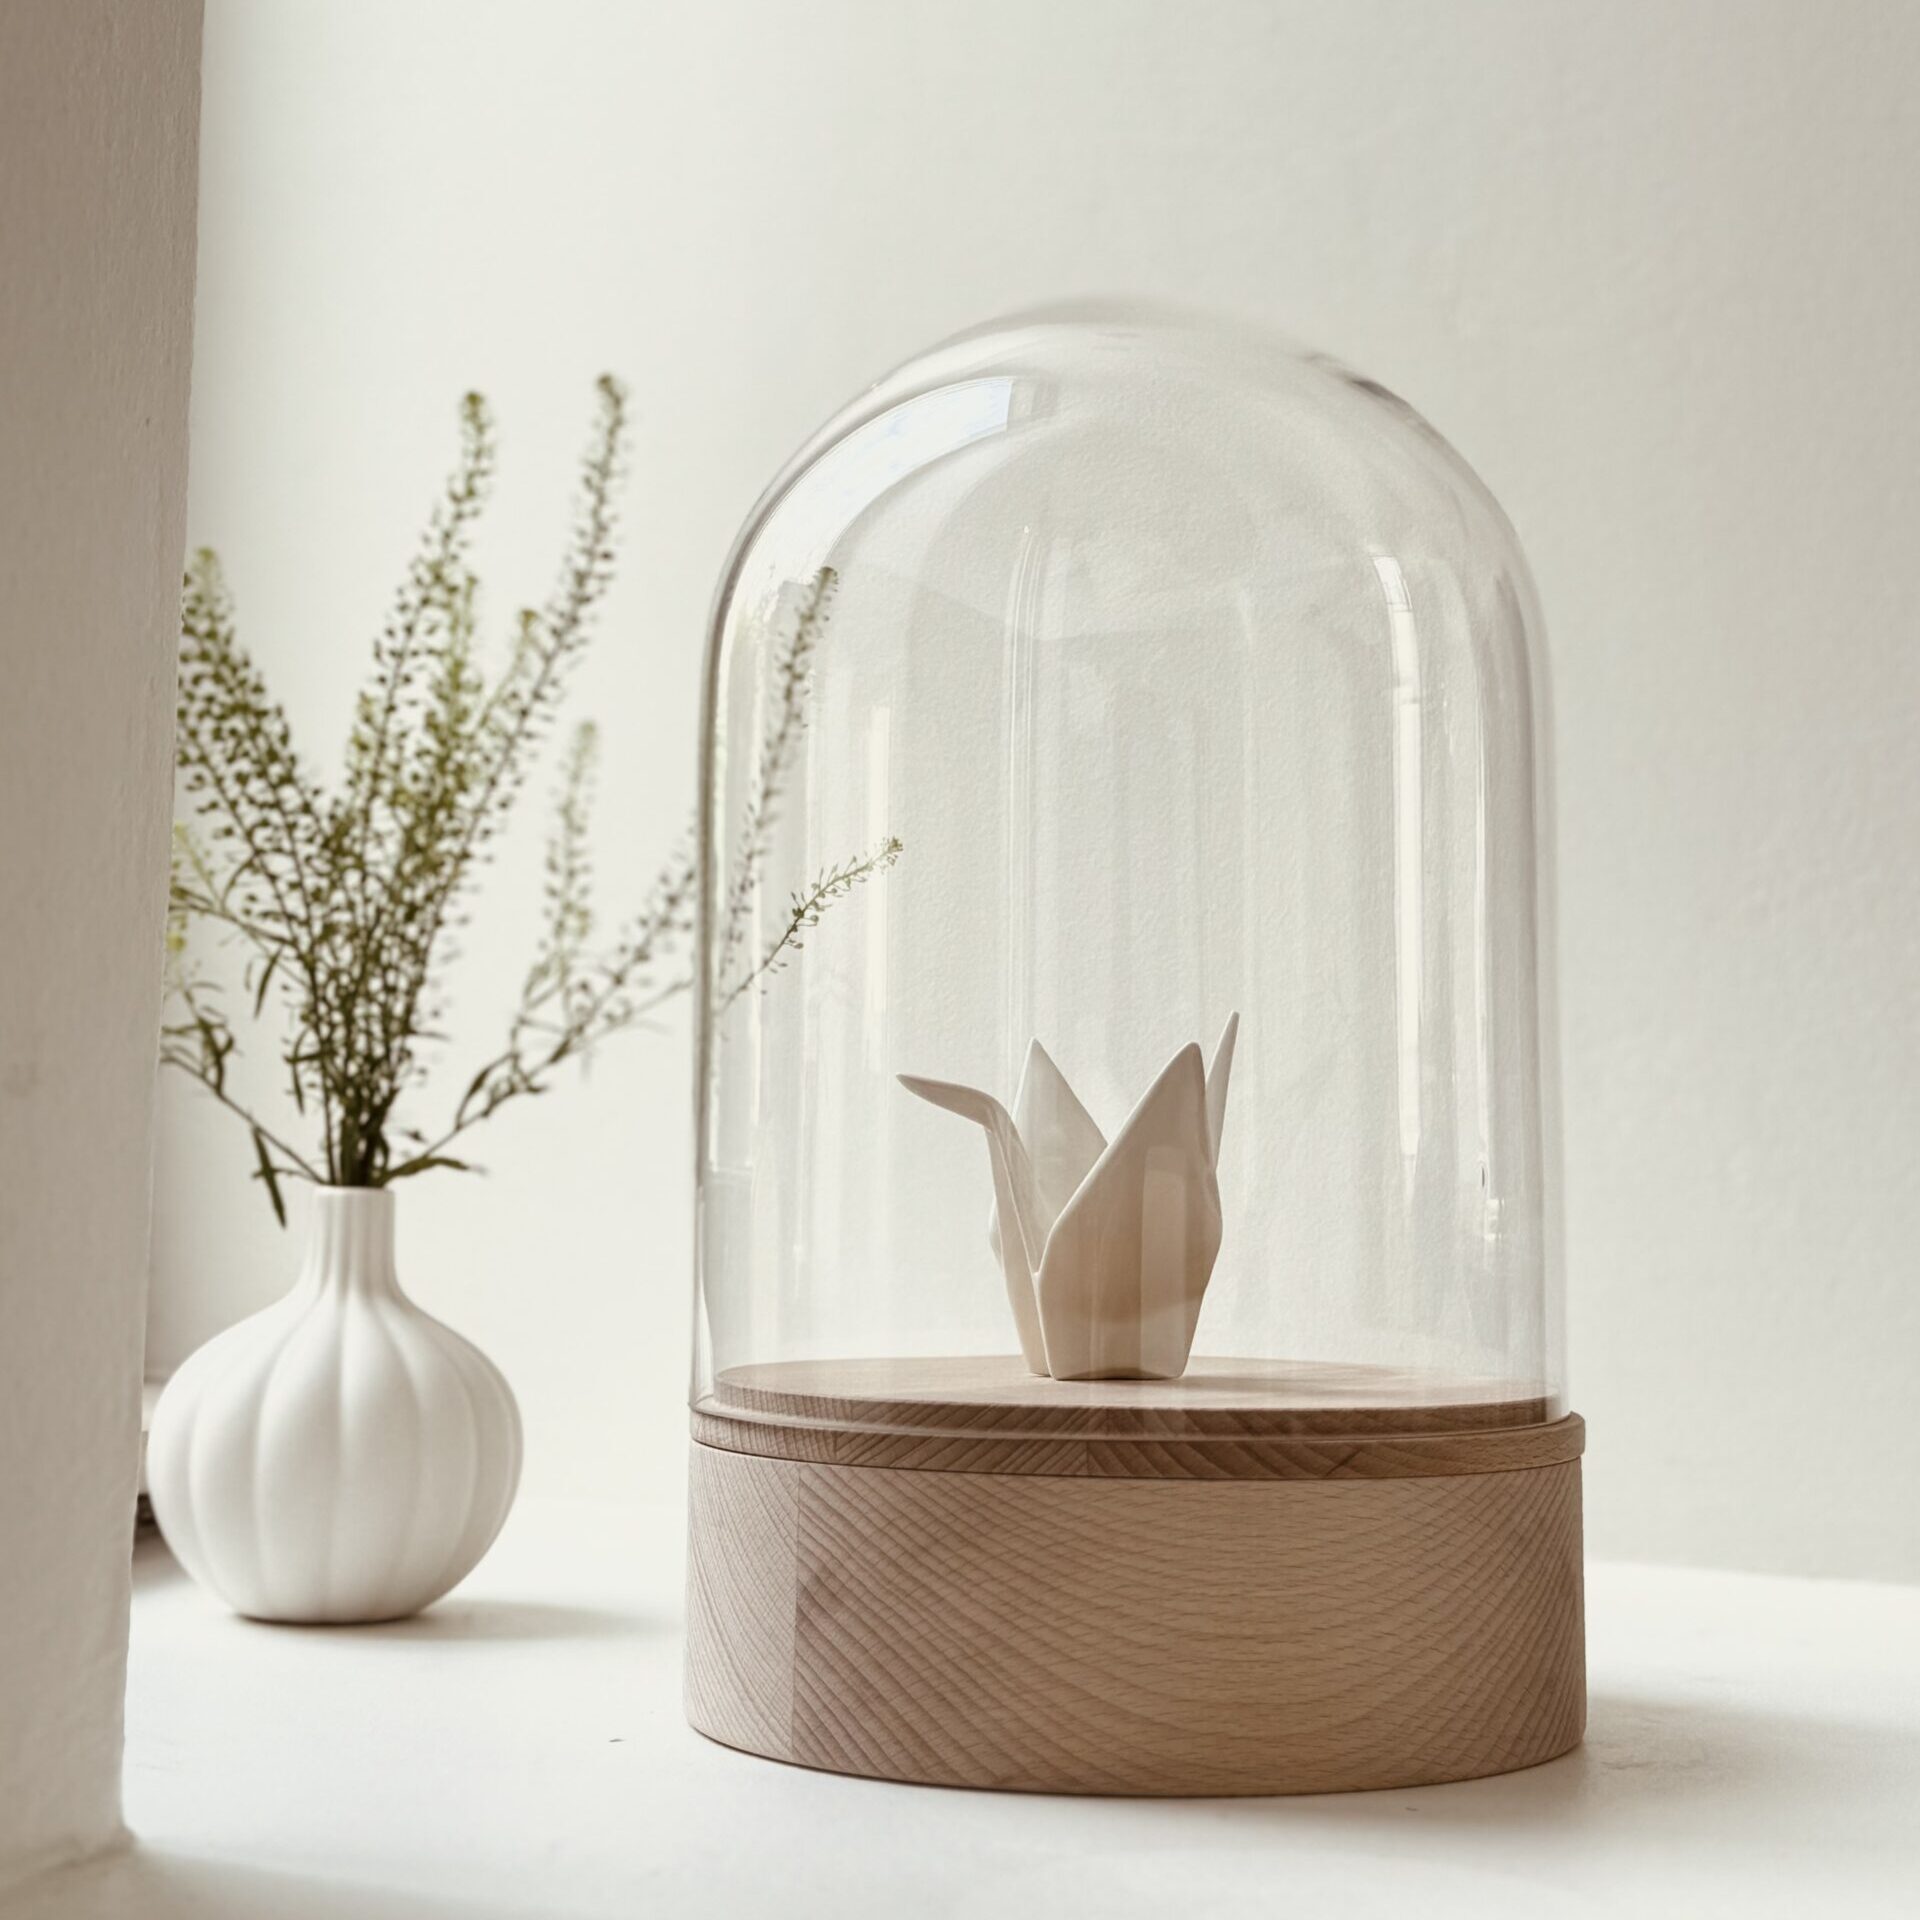 Design houten urn met glazen stolp en kraanvogel van porselein